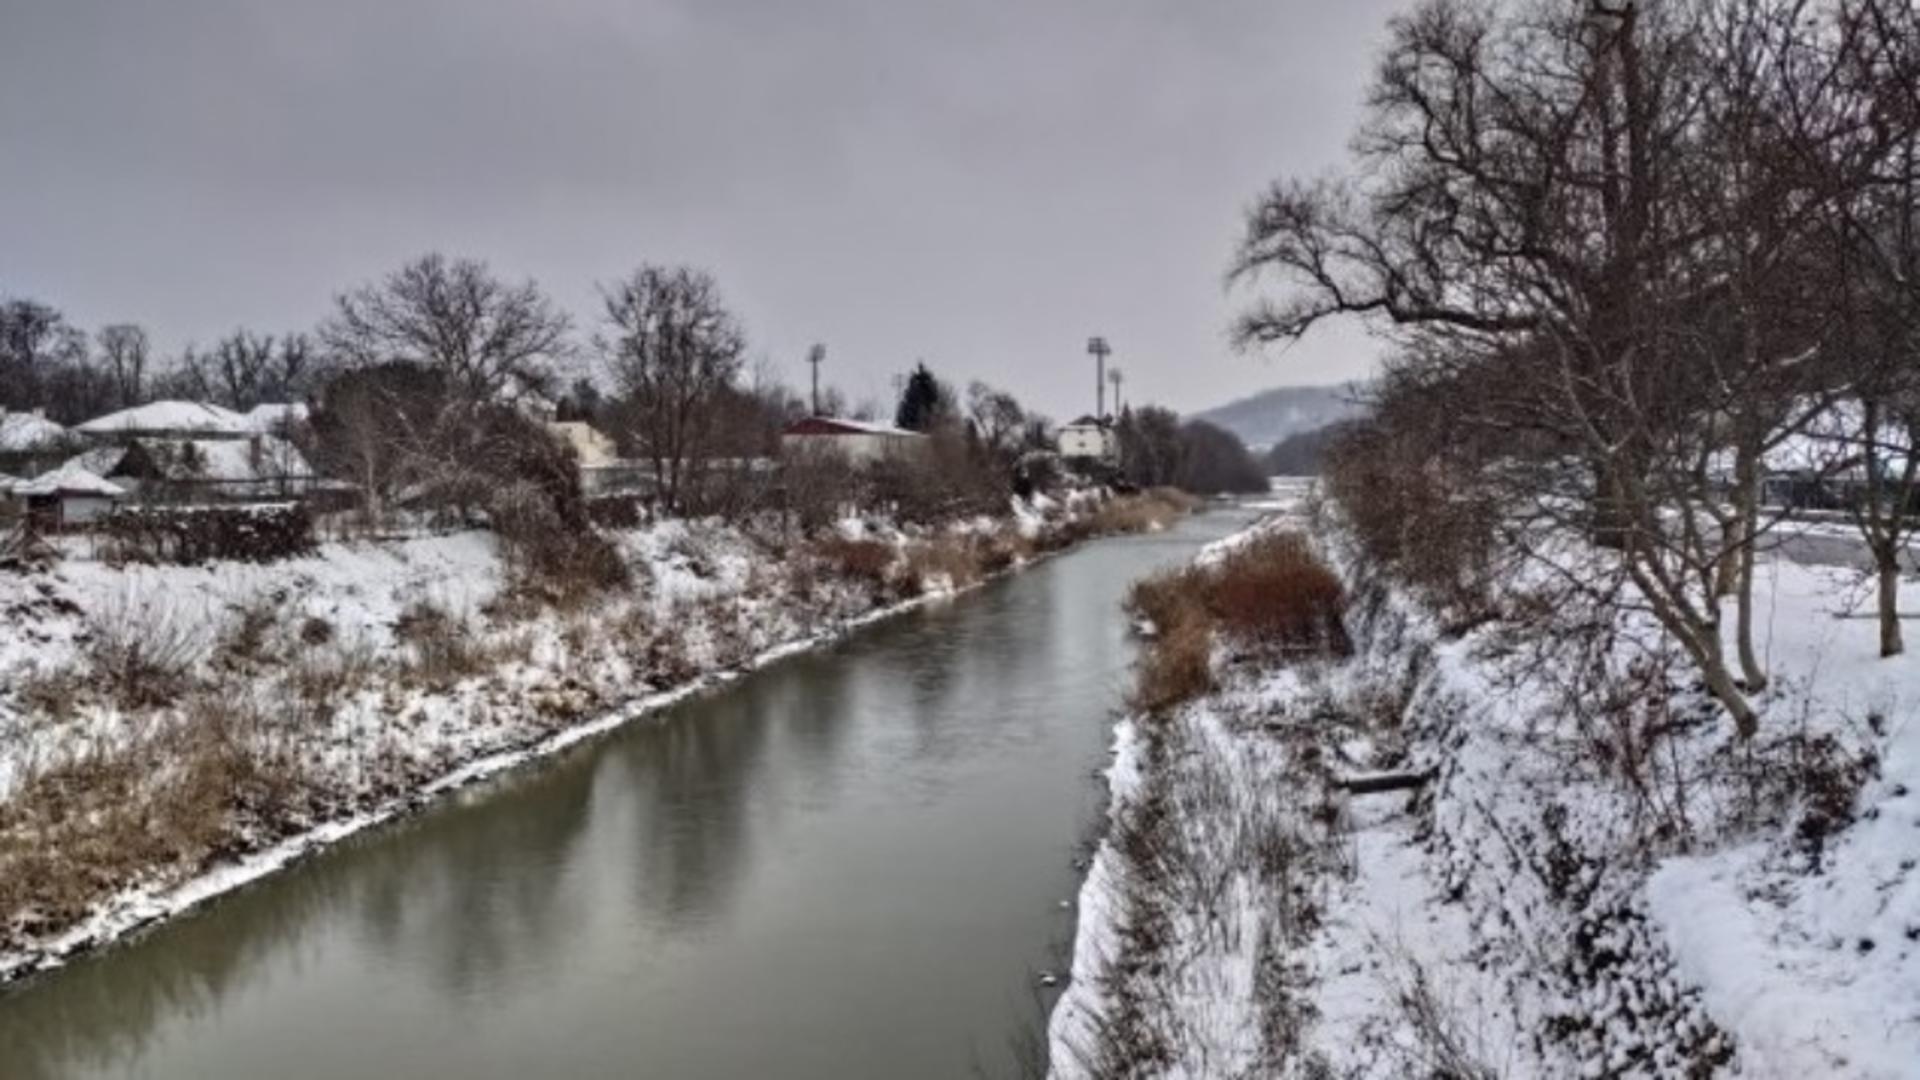 Au murit cei doi frați care au căzut în râul Bistriţa în timp ce se dădeau pe gheață